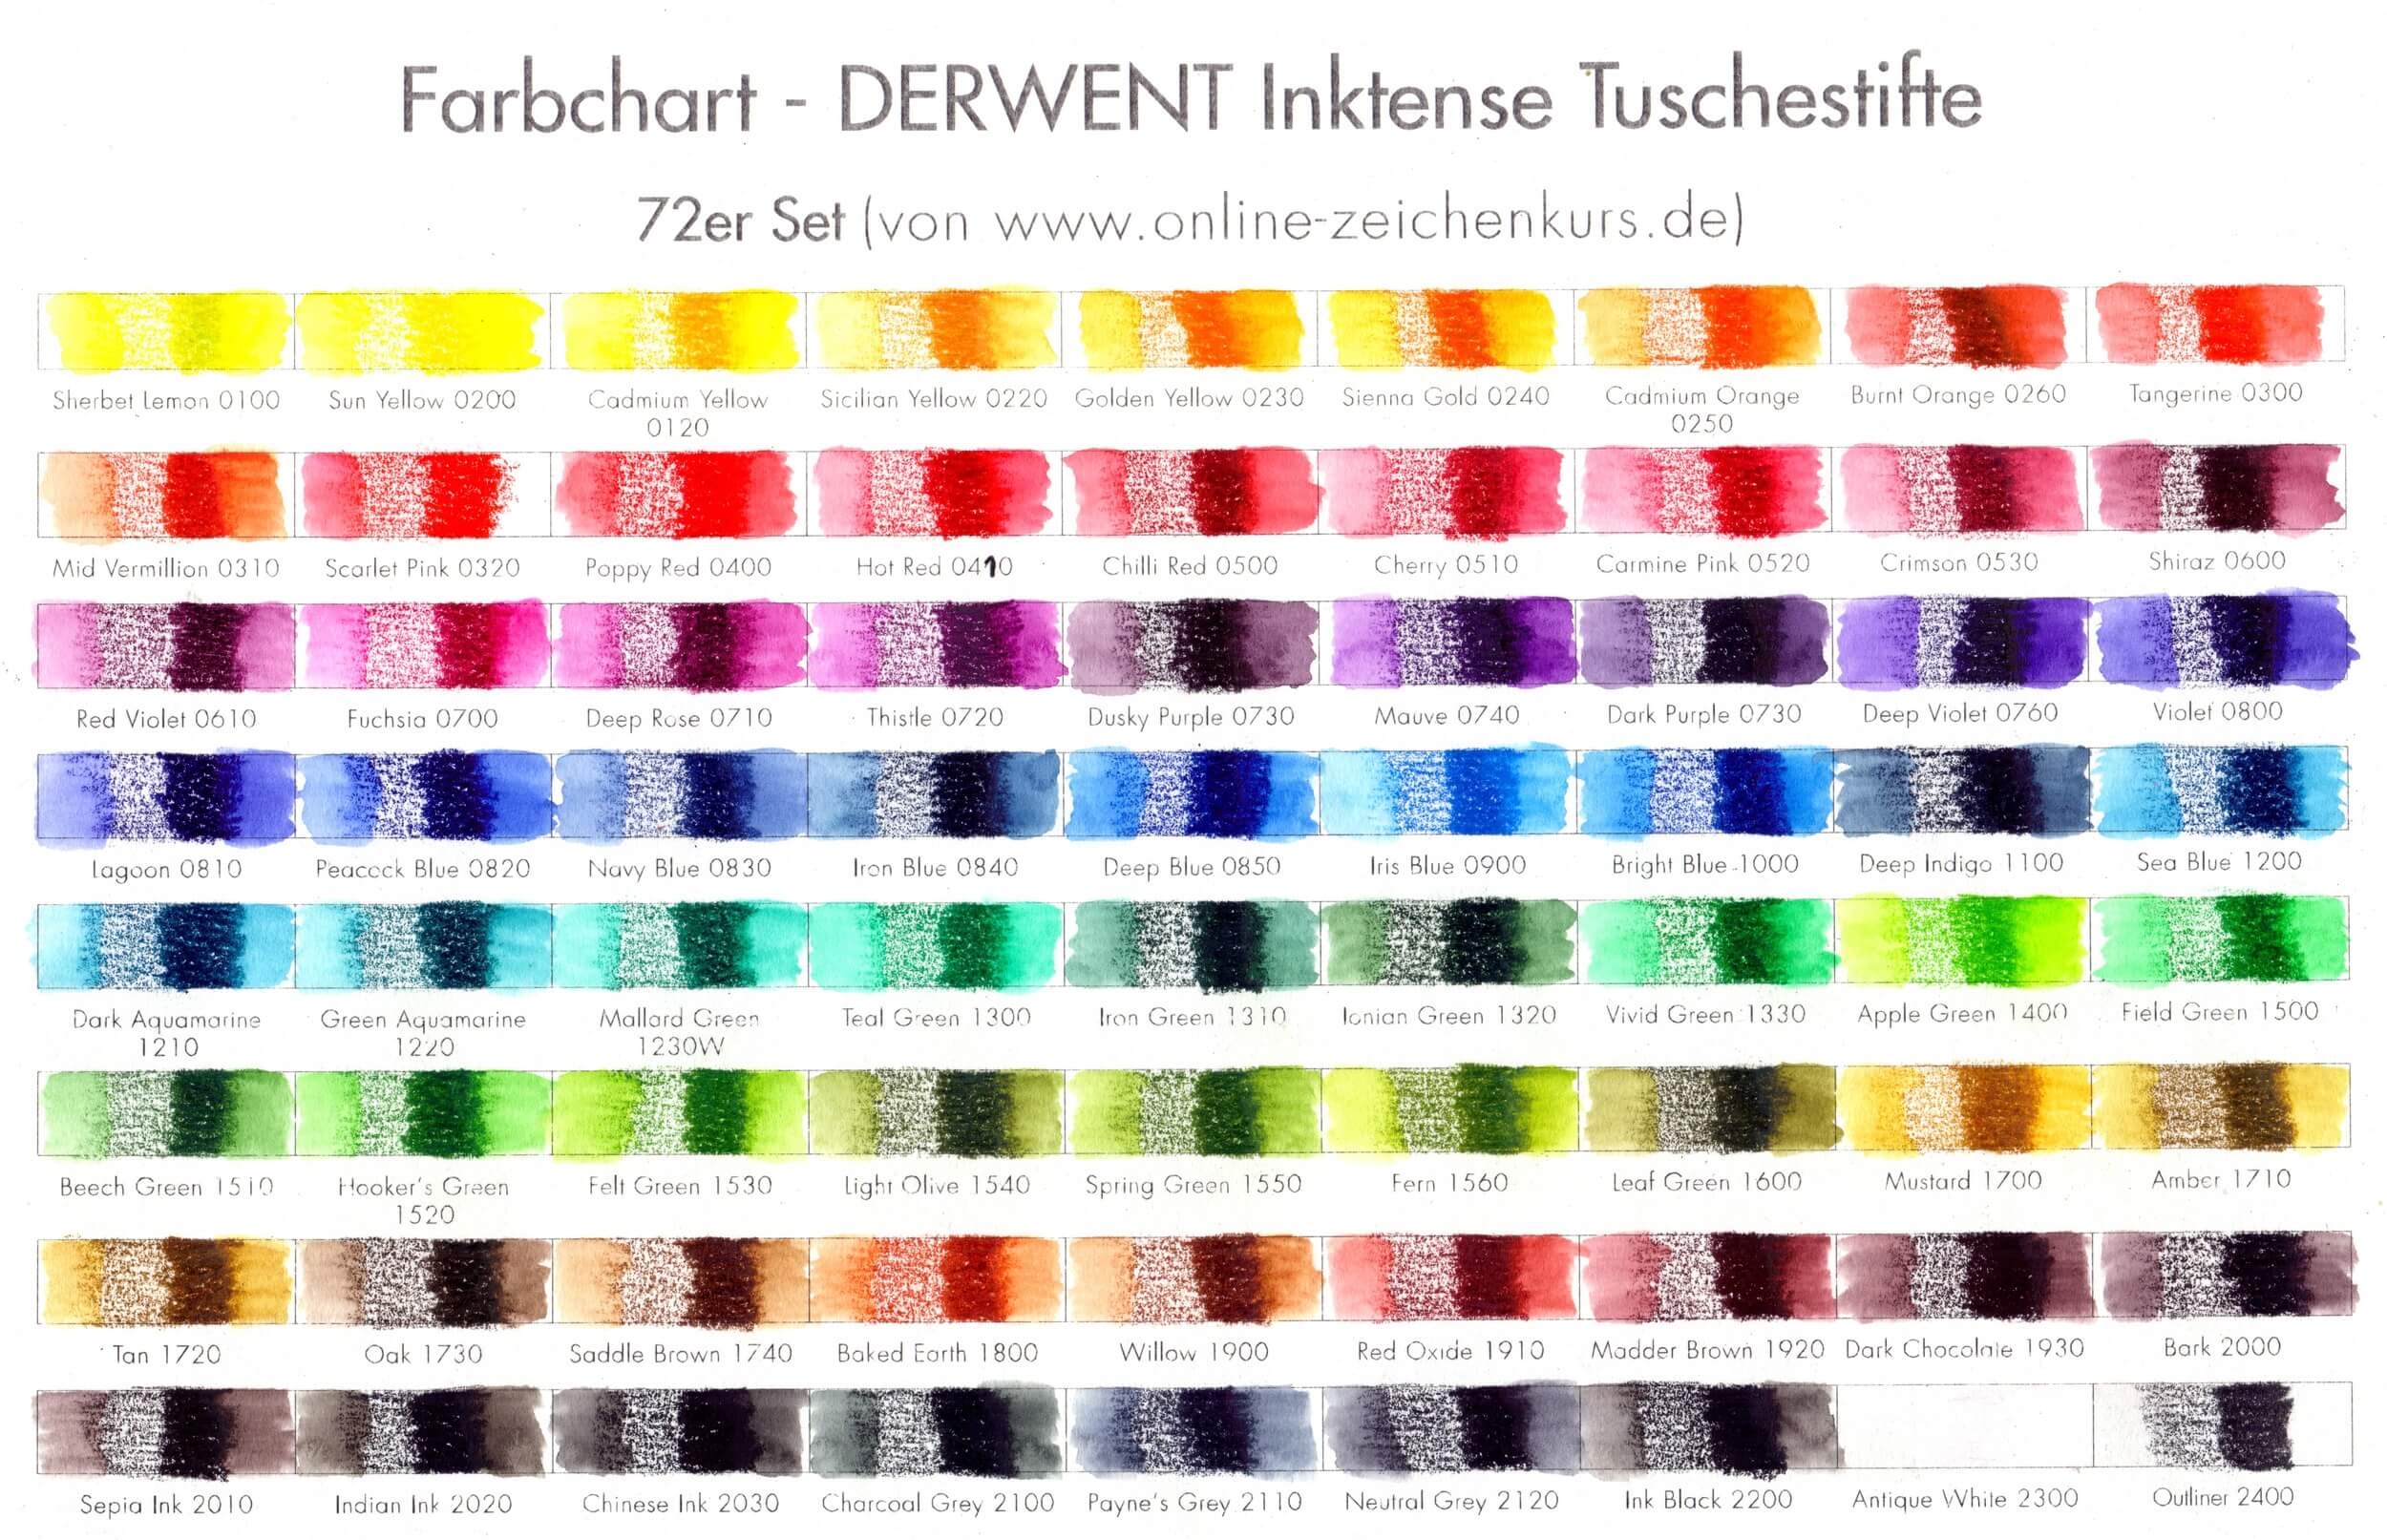 DERWENT Inktense Tuschebuntstifte 72er Set: Farbchart ausgefüllt